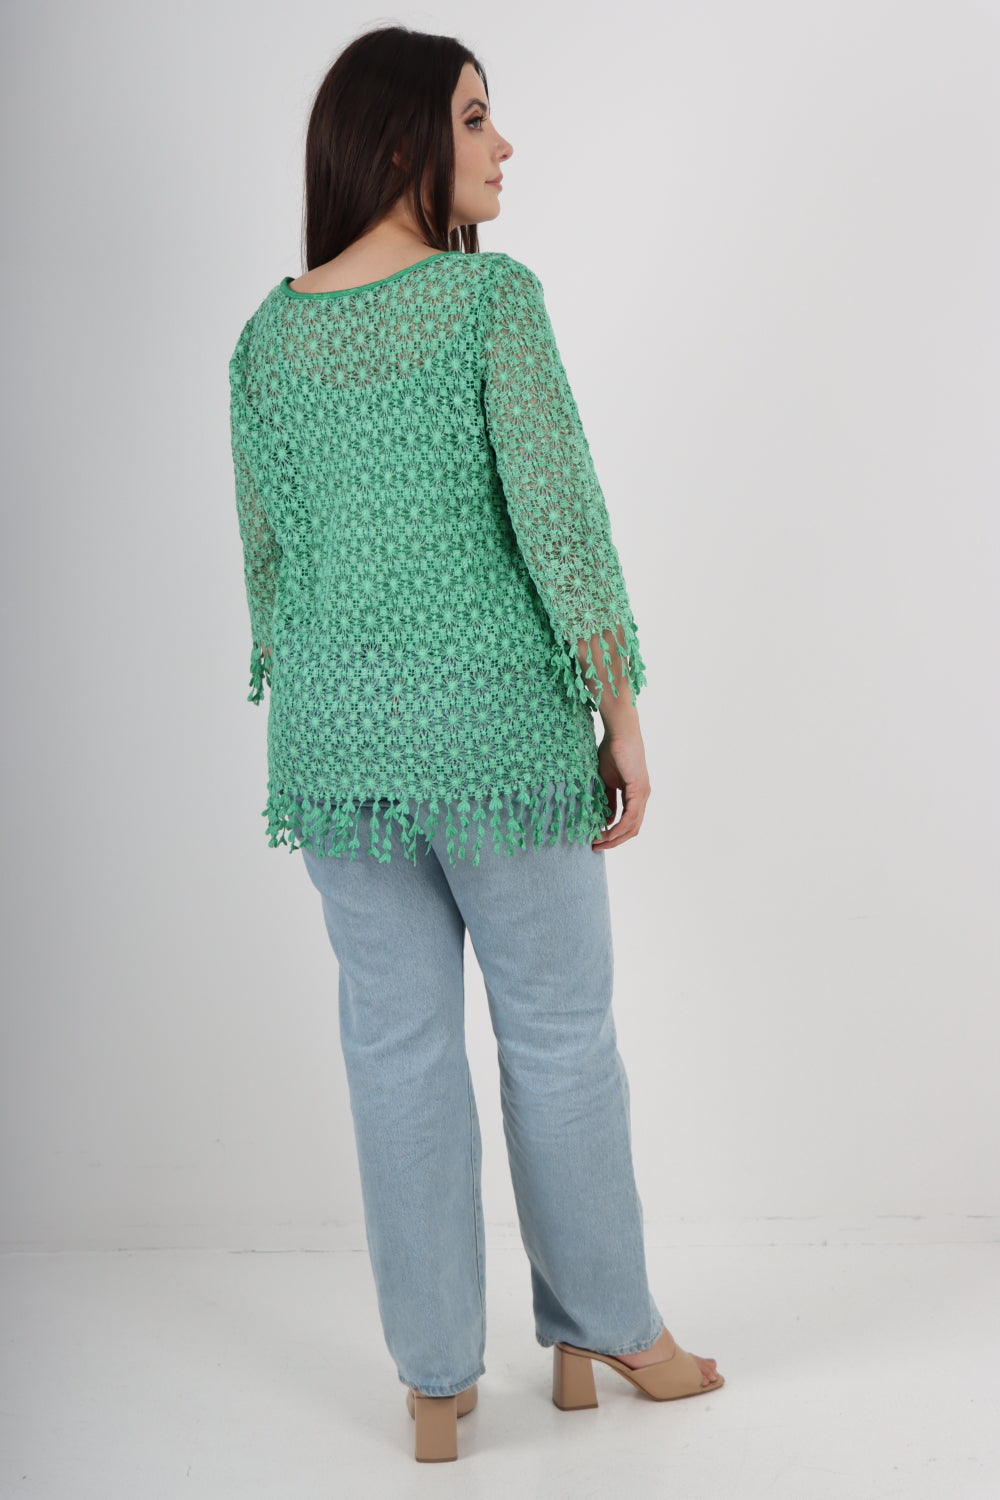 Italian Crochet Lace Long Sleeve Tassels & Fringe Cut Tunic Top